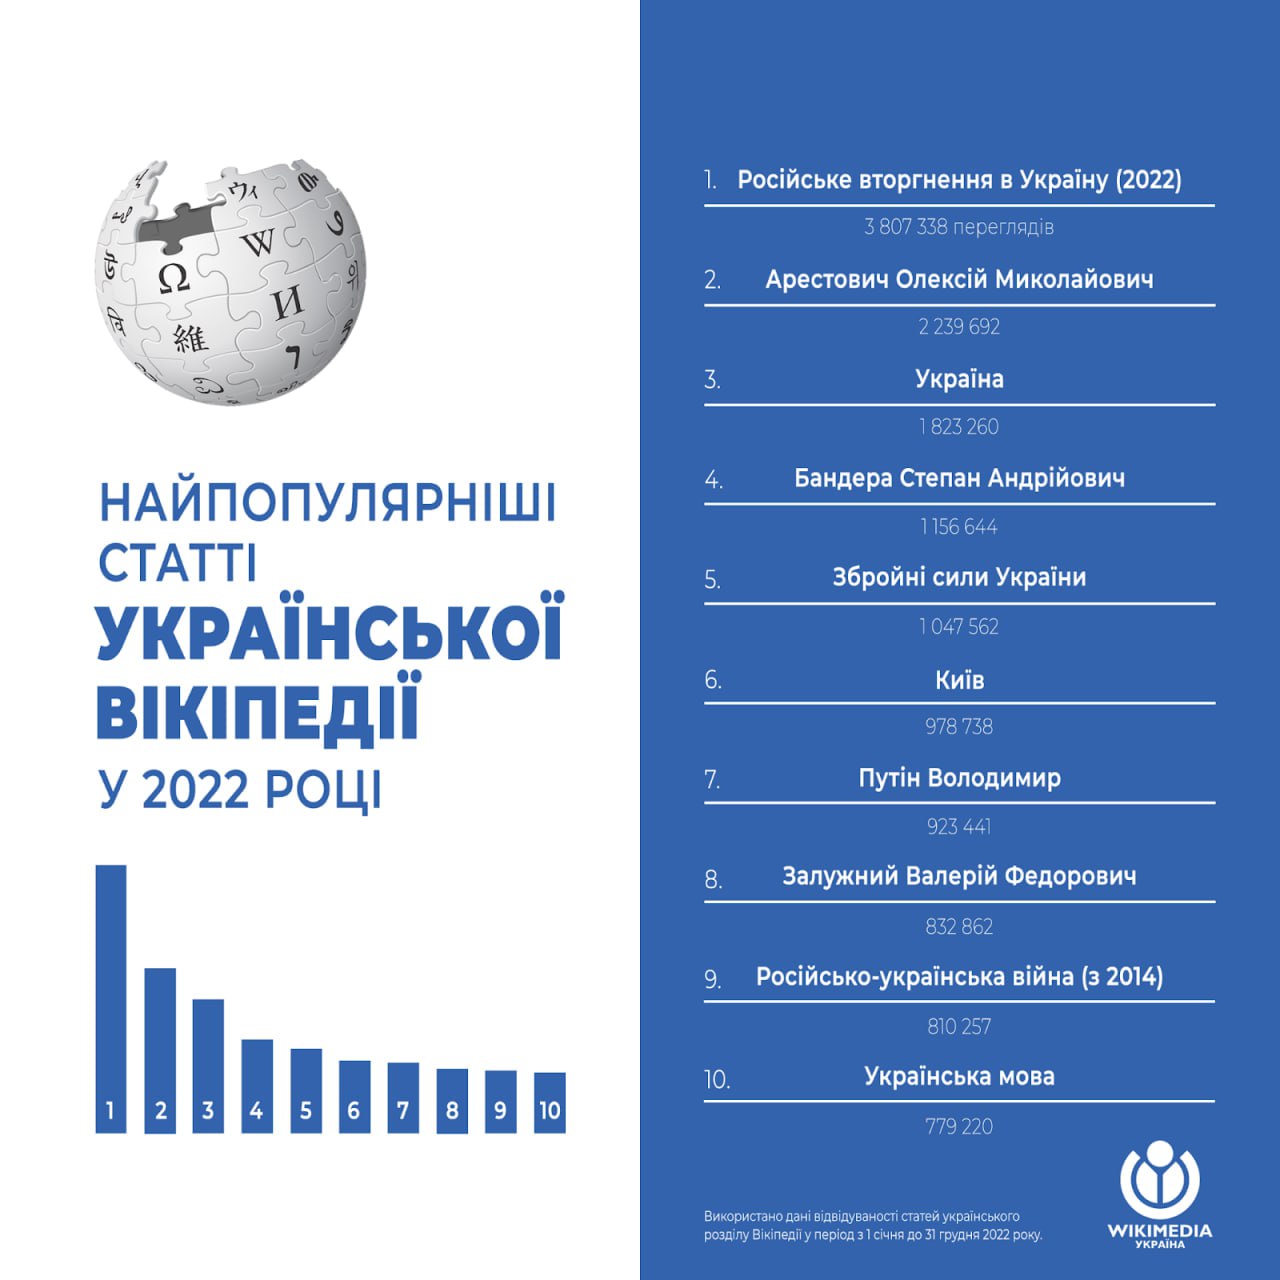 Что чаще всего искали в украинской Википедии в 2022 году